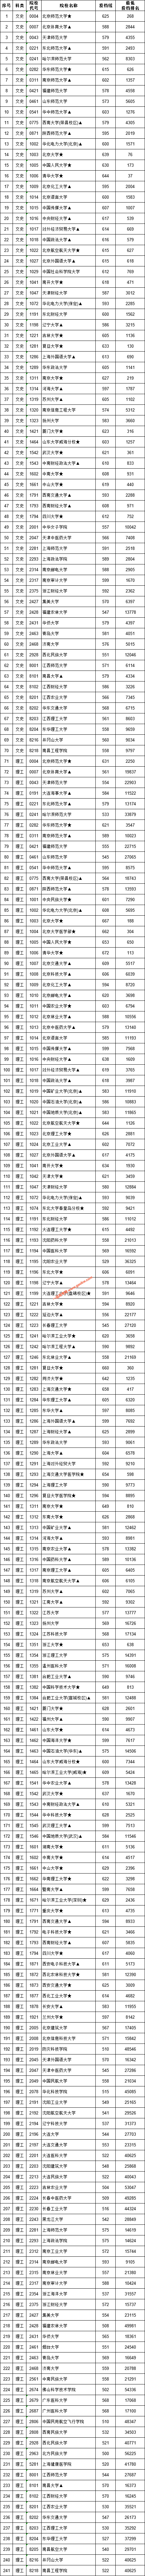 江西省2019年普通高校招生国家专项投档情况统计表